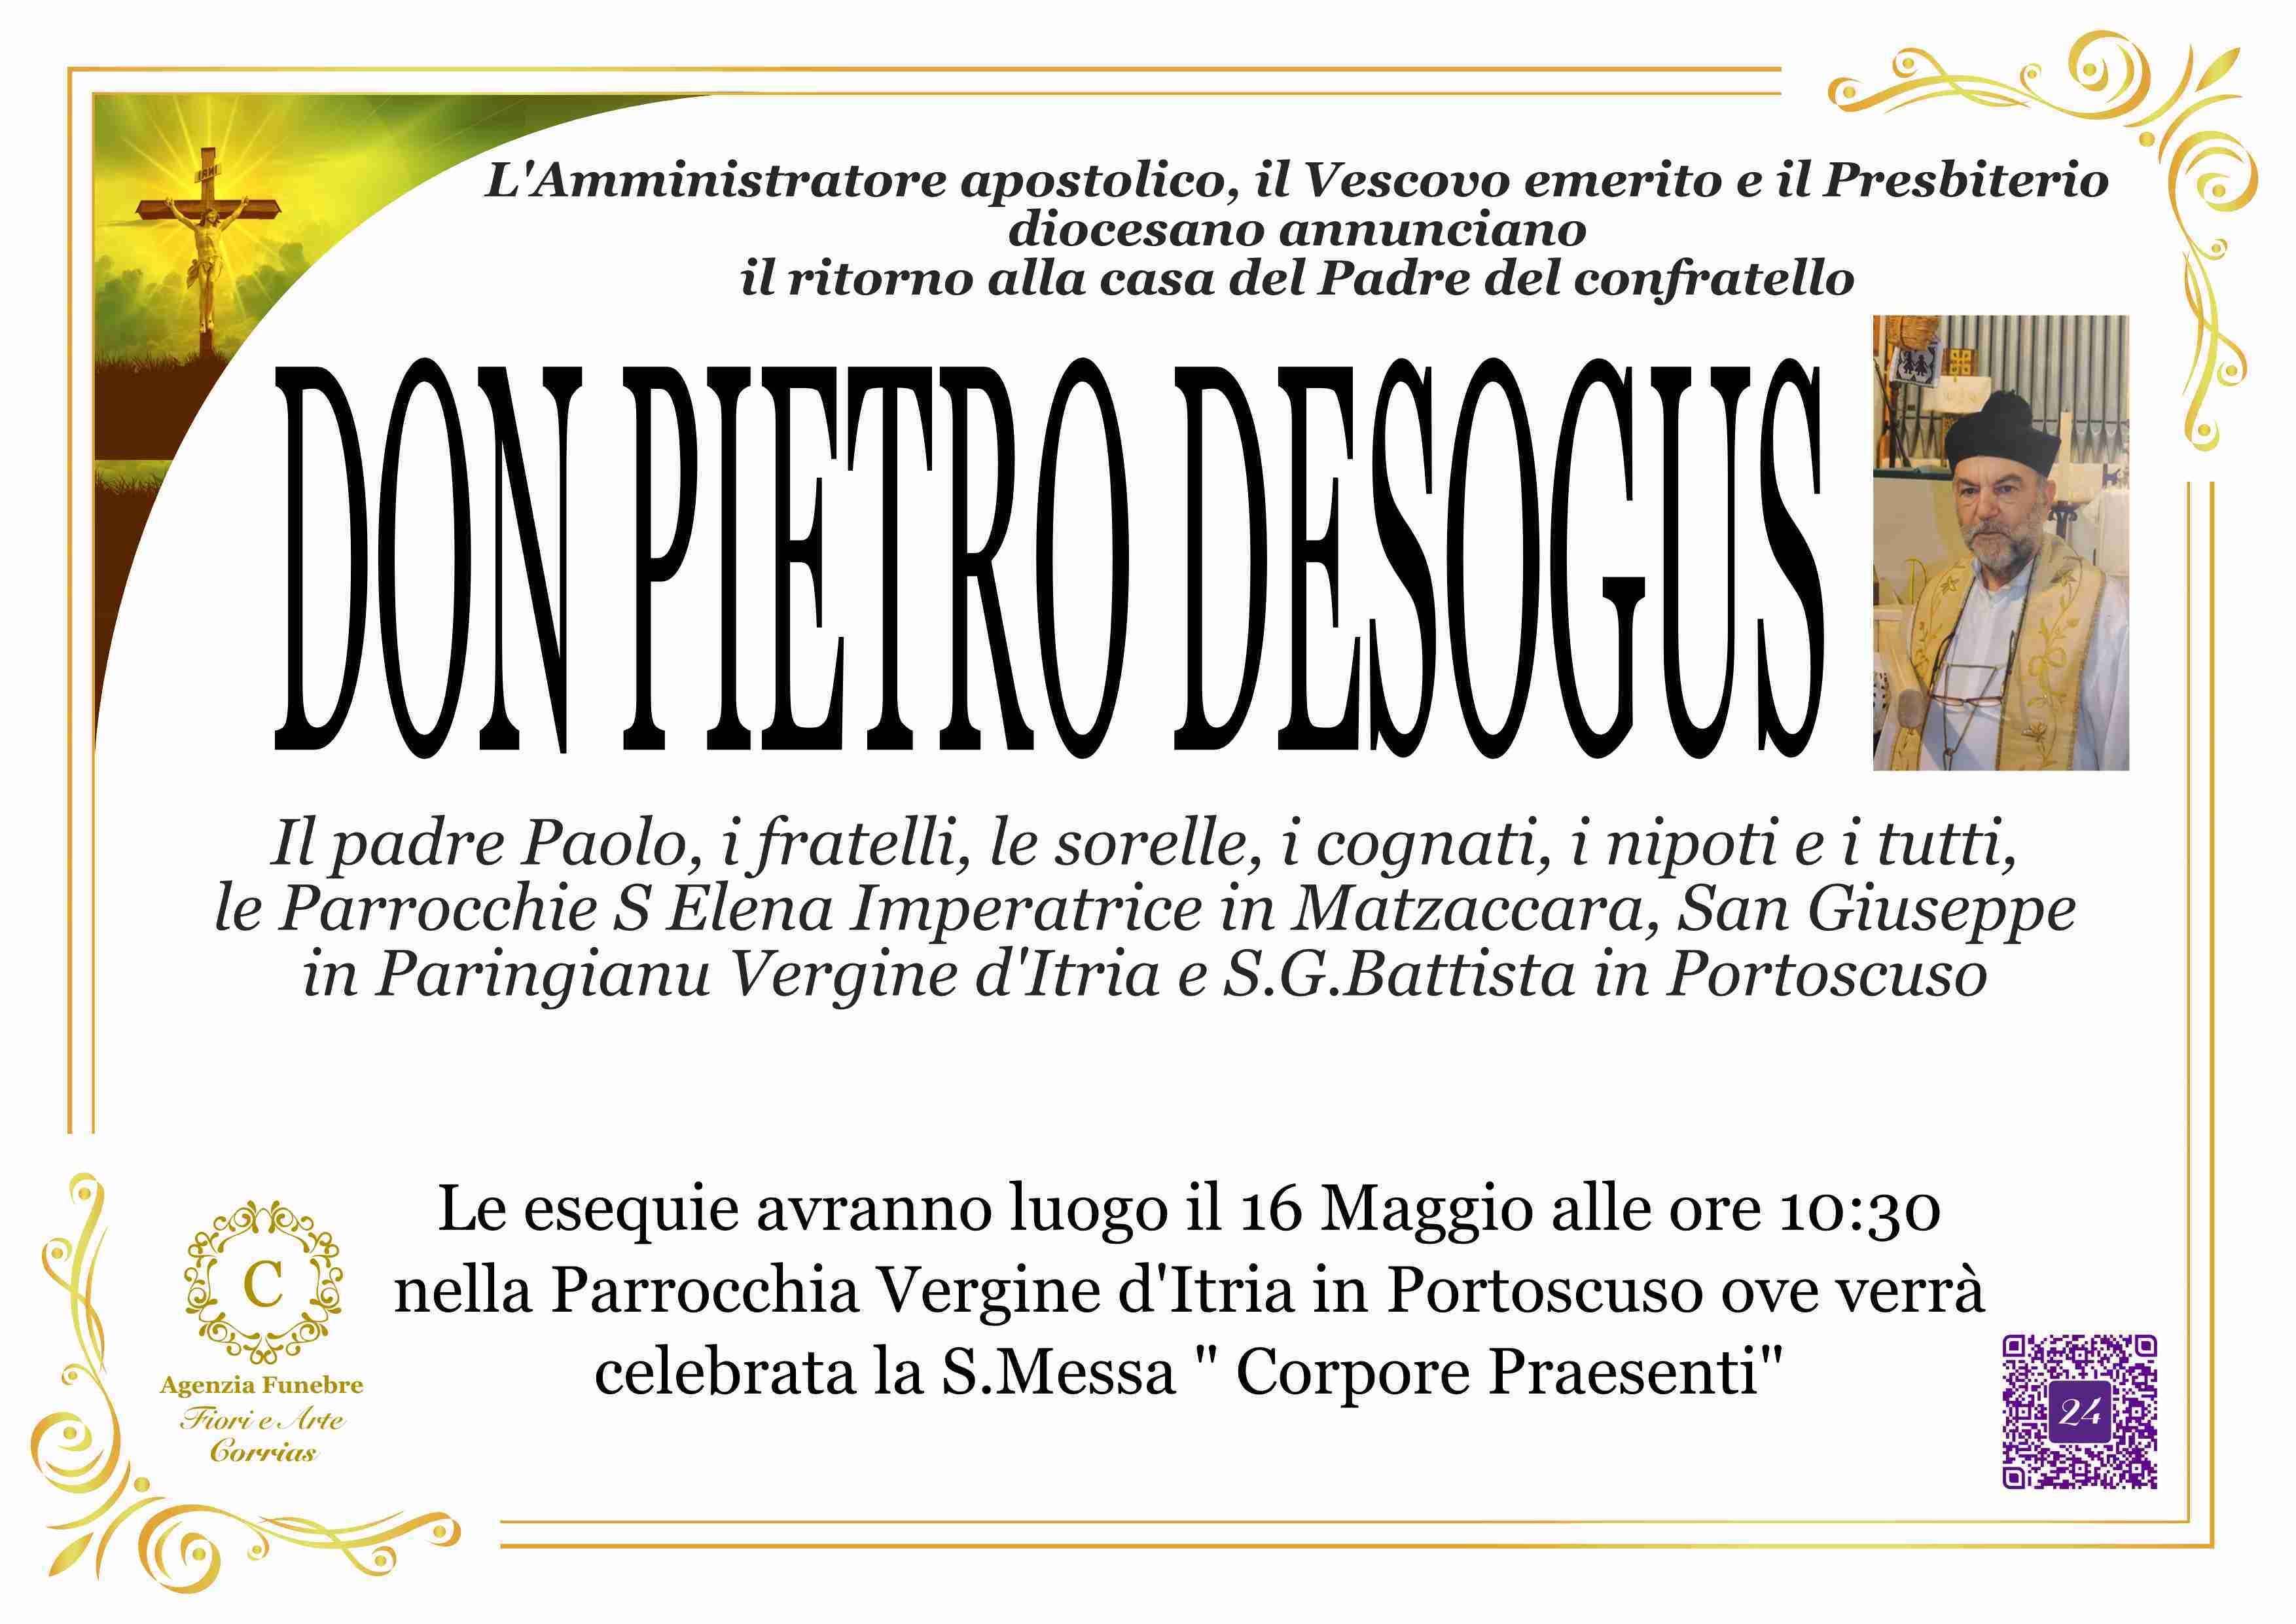 Pietro Desogus